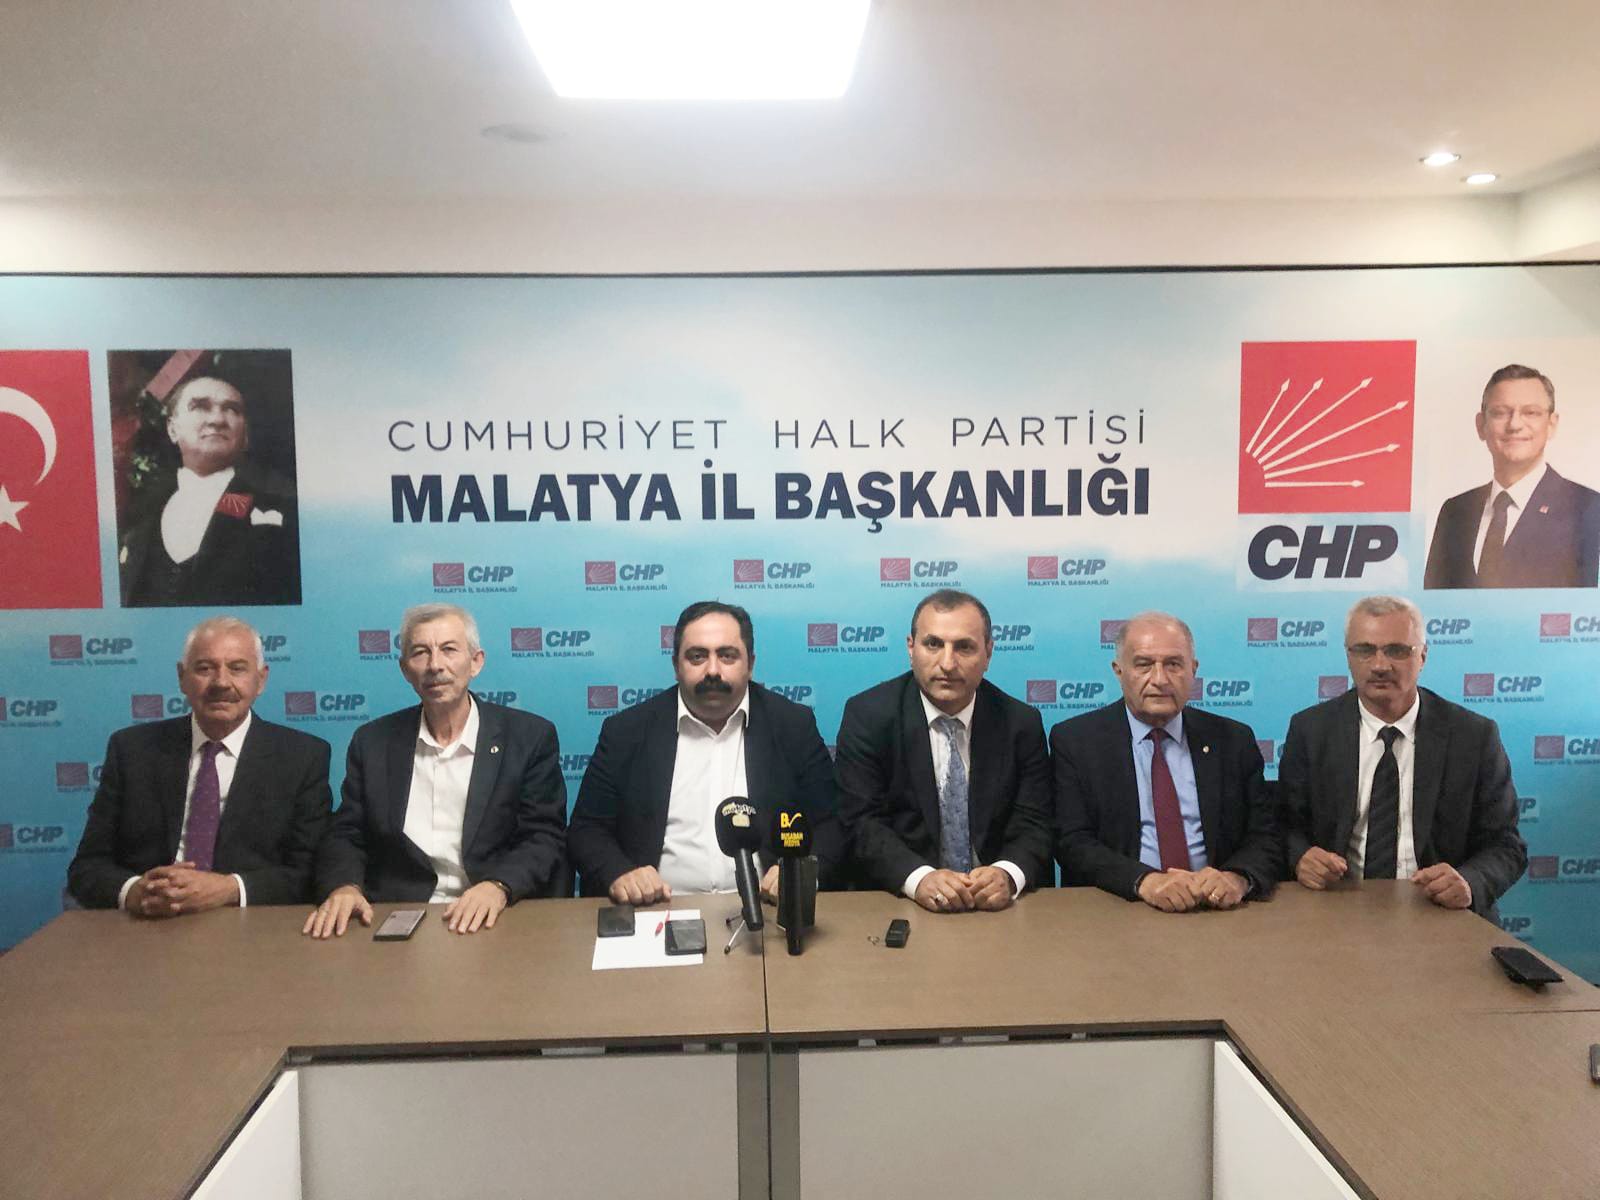 Cumhuriyet Halk Partisi Malatya İl Başkanı Barış Yıldız Basın Açıklaması Gerçekleştirdi 